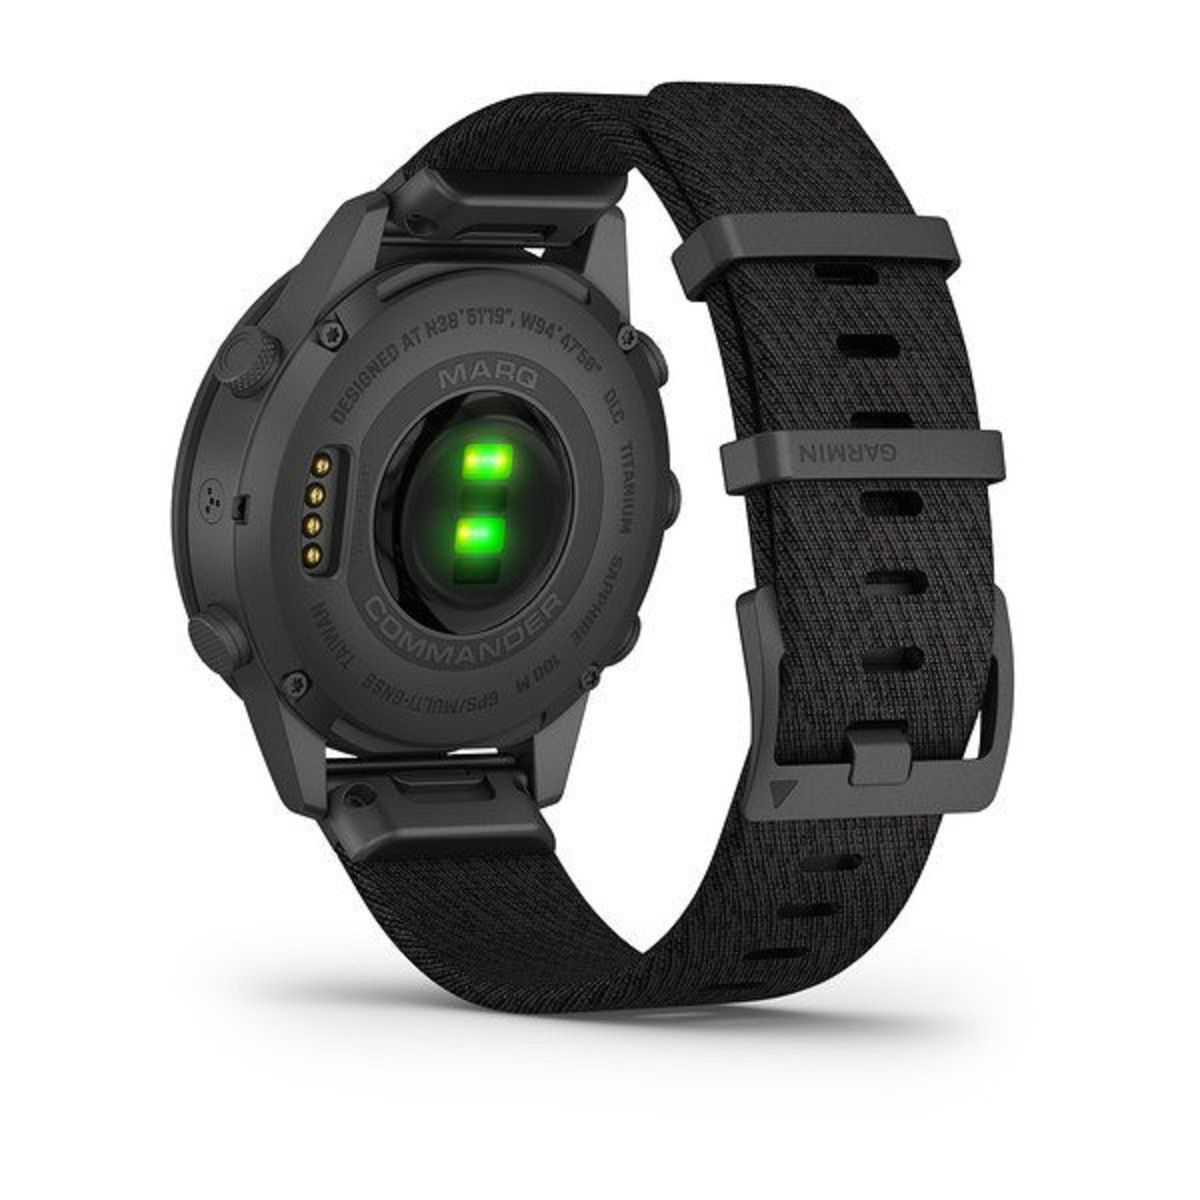 Firma Garmin zaprezentowała nowego smartwatcha